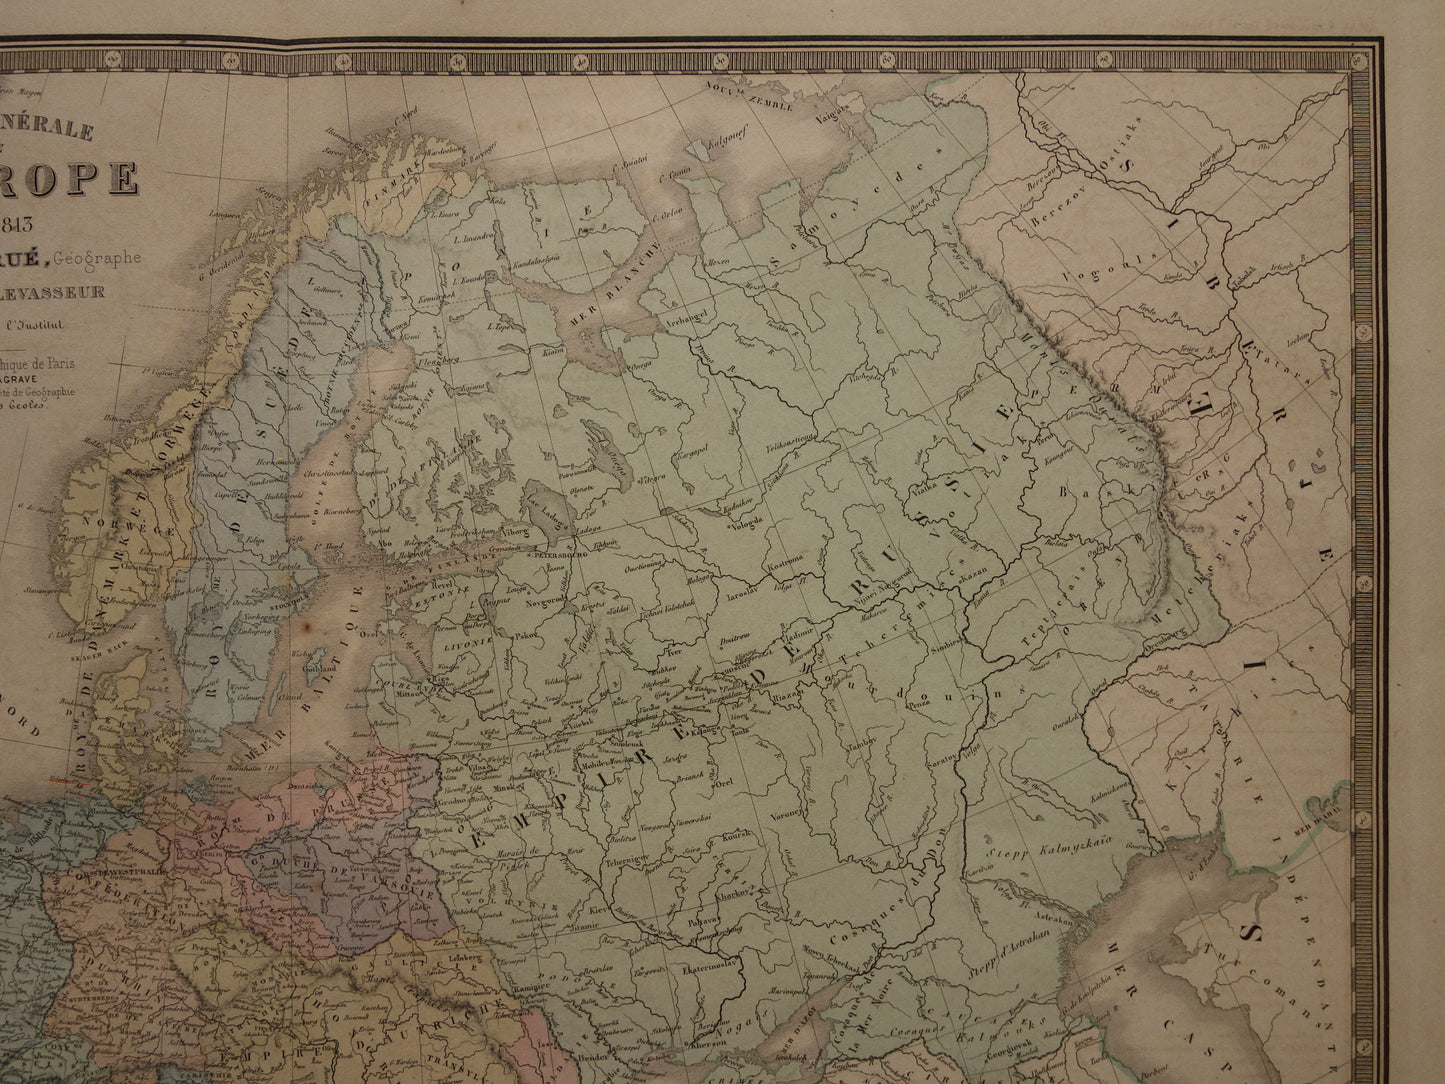 Europa in 1813 grote oude landkaart uit 1876 van Europa aan einde Franse revolutie - historische kaarten